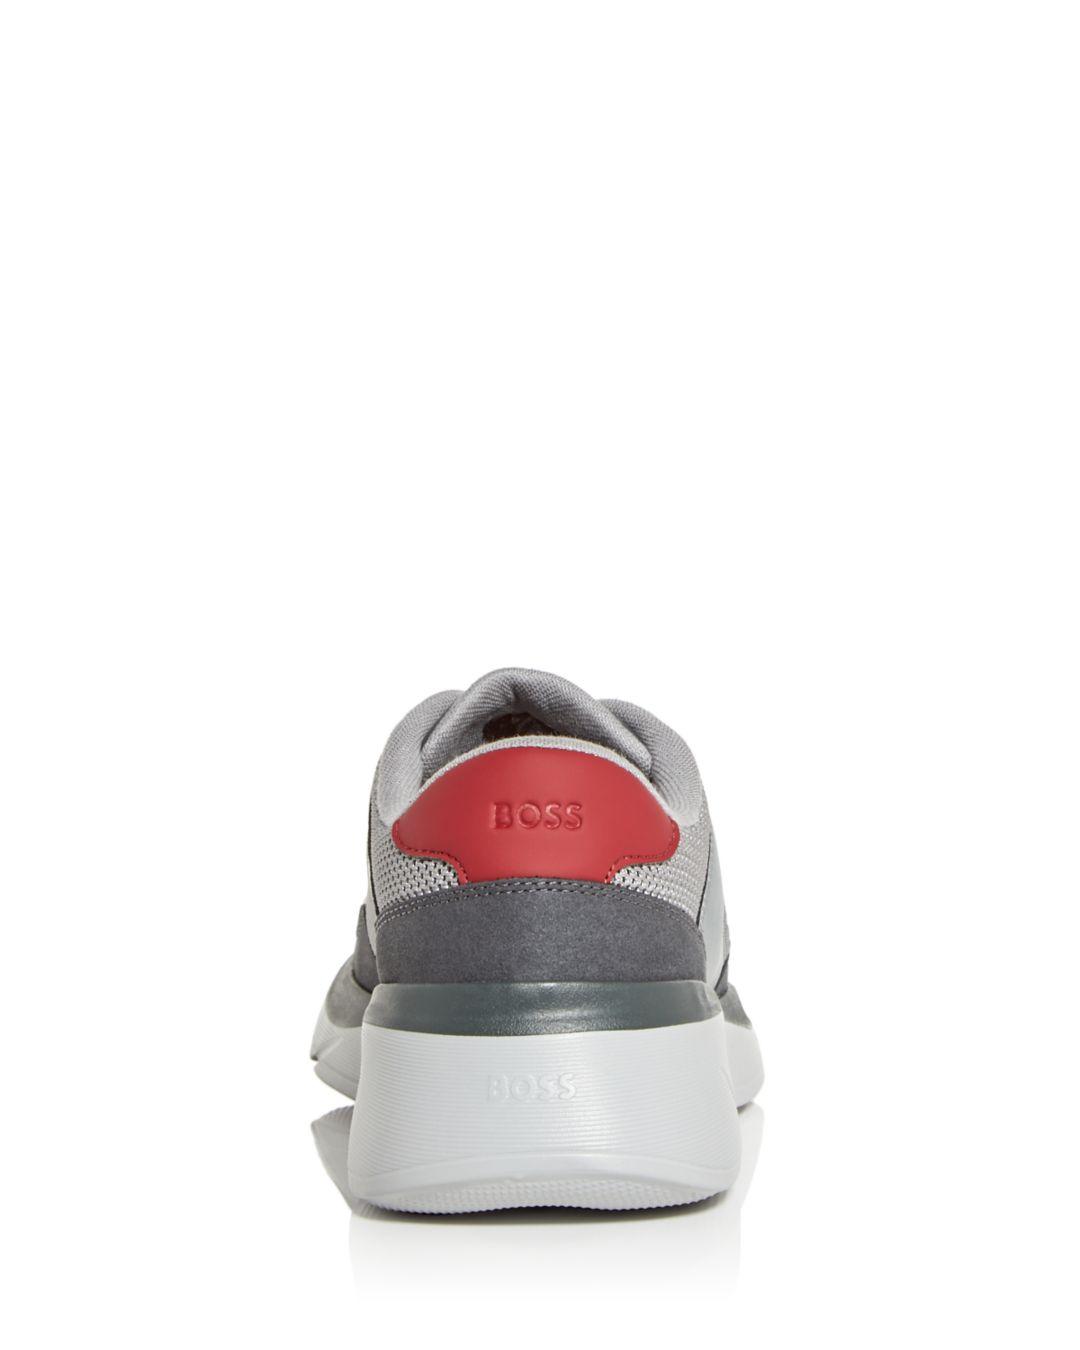 BOSS by HUGO BOSS Dean Low Top Sneakers in Gray for Men | Lyst